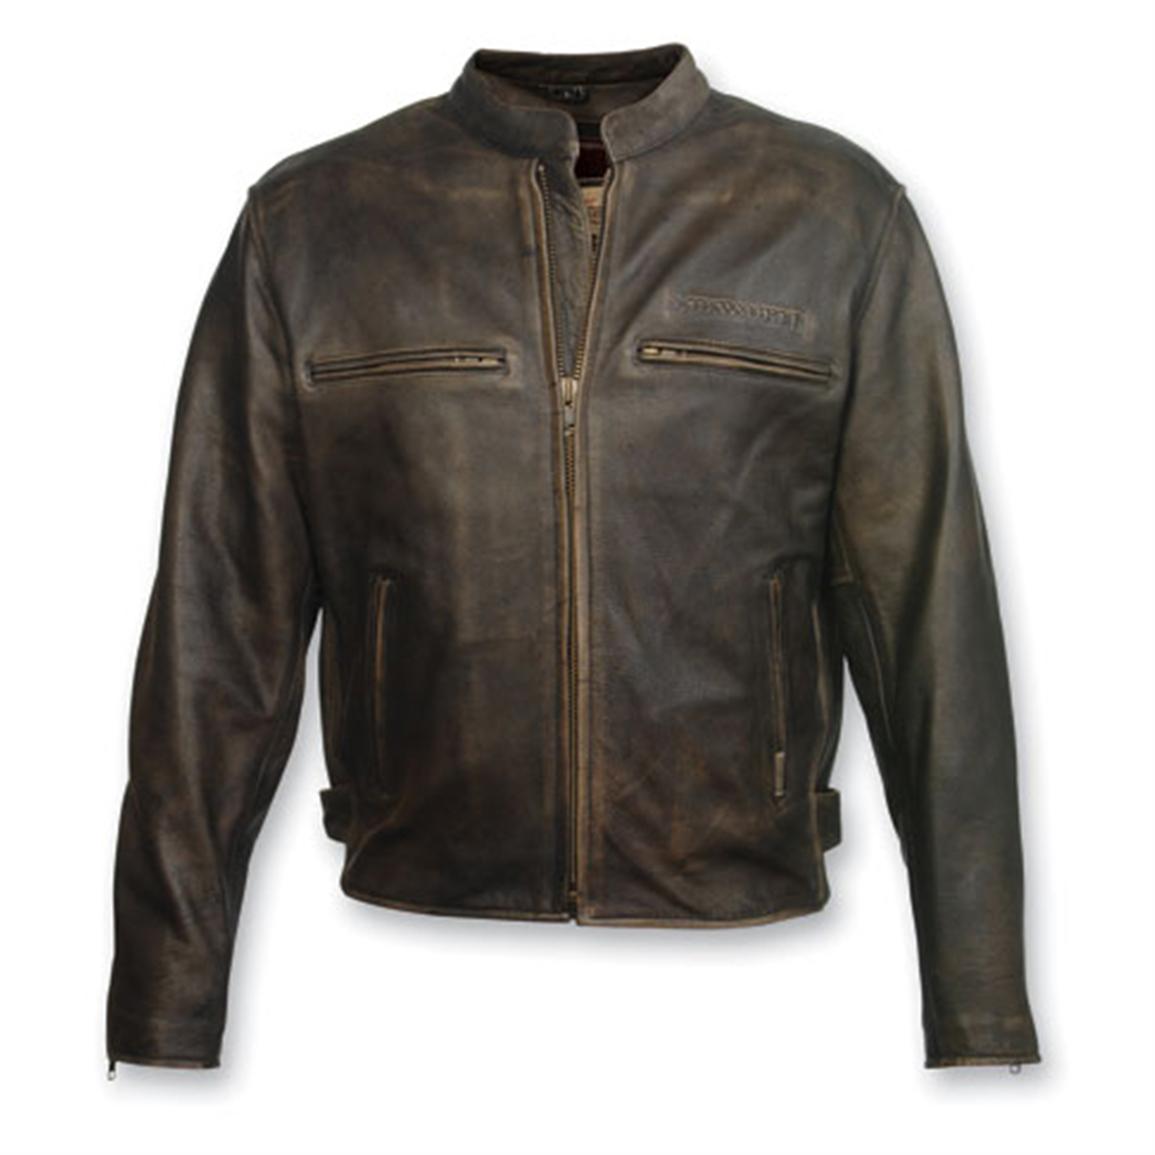 Vintage Leather Jackets For Men 74